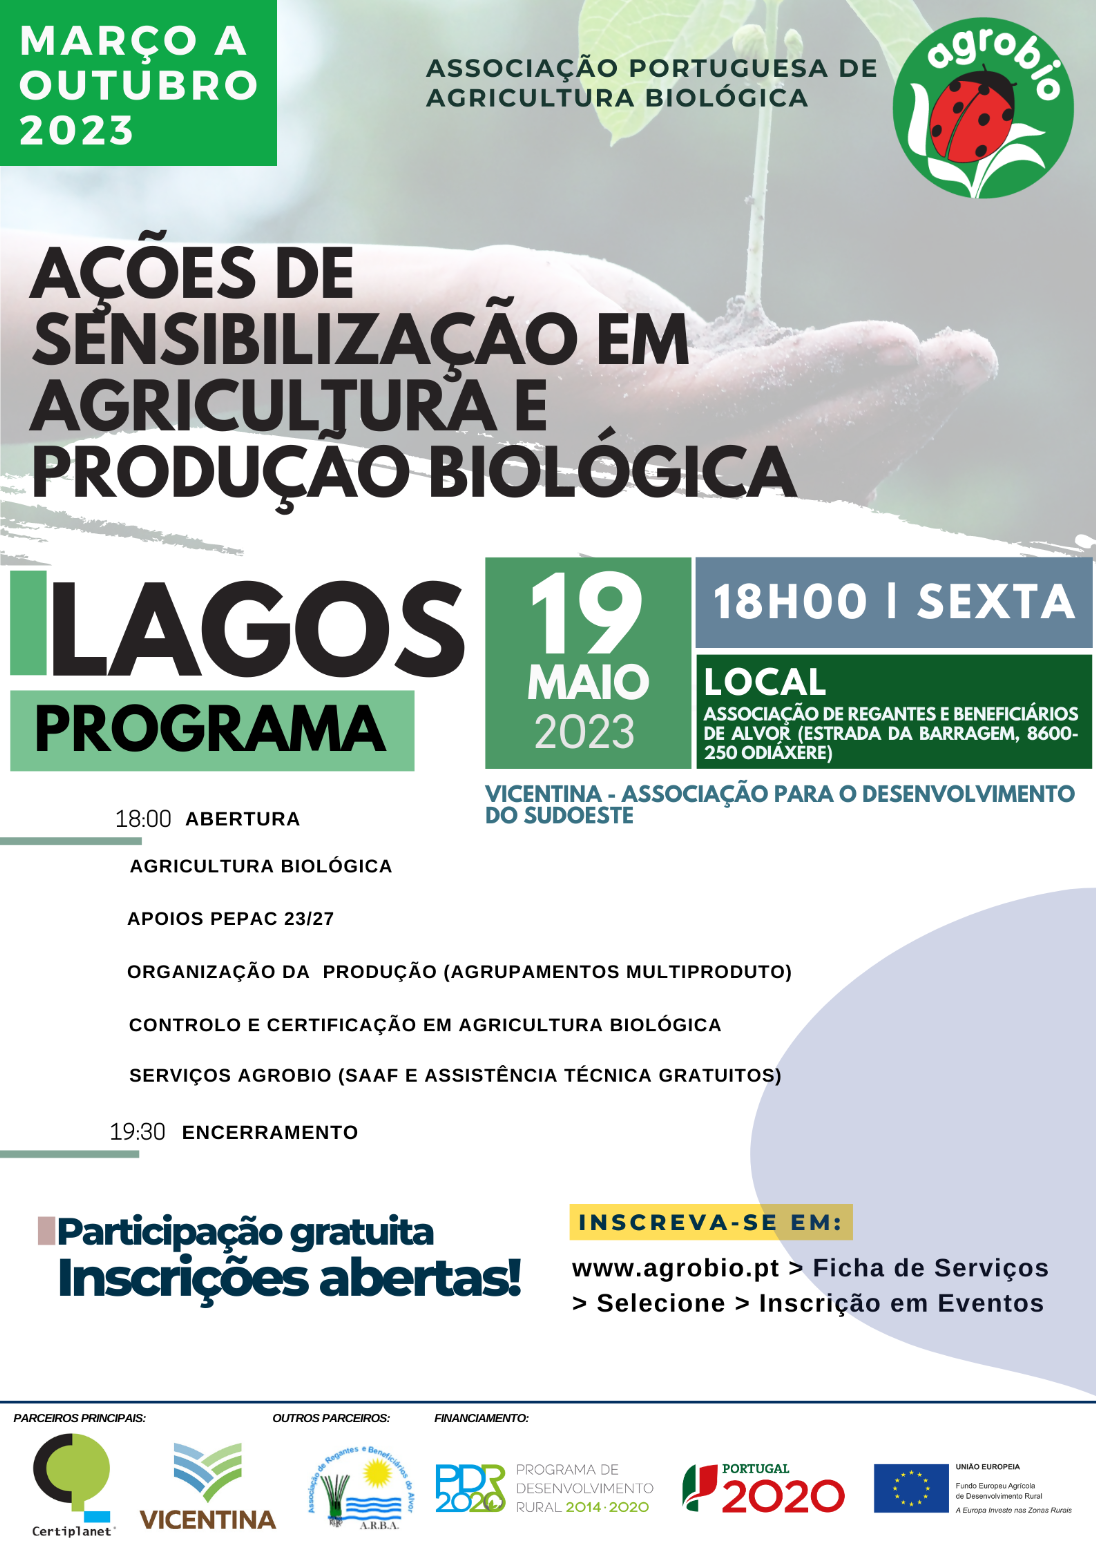 Acções de Sensibilização em Agricultura e Produção Biológica em Lagos - Associação Portuguesa de Agricultura Biológica